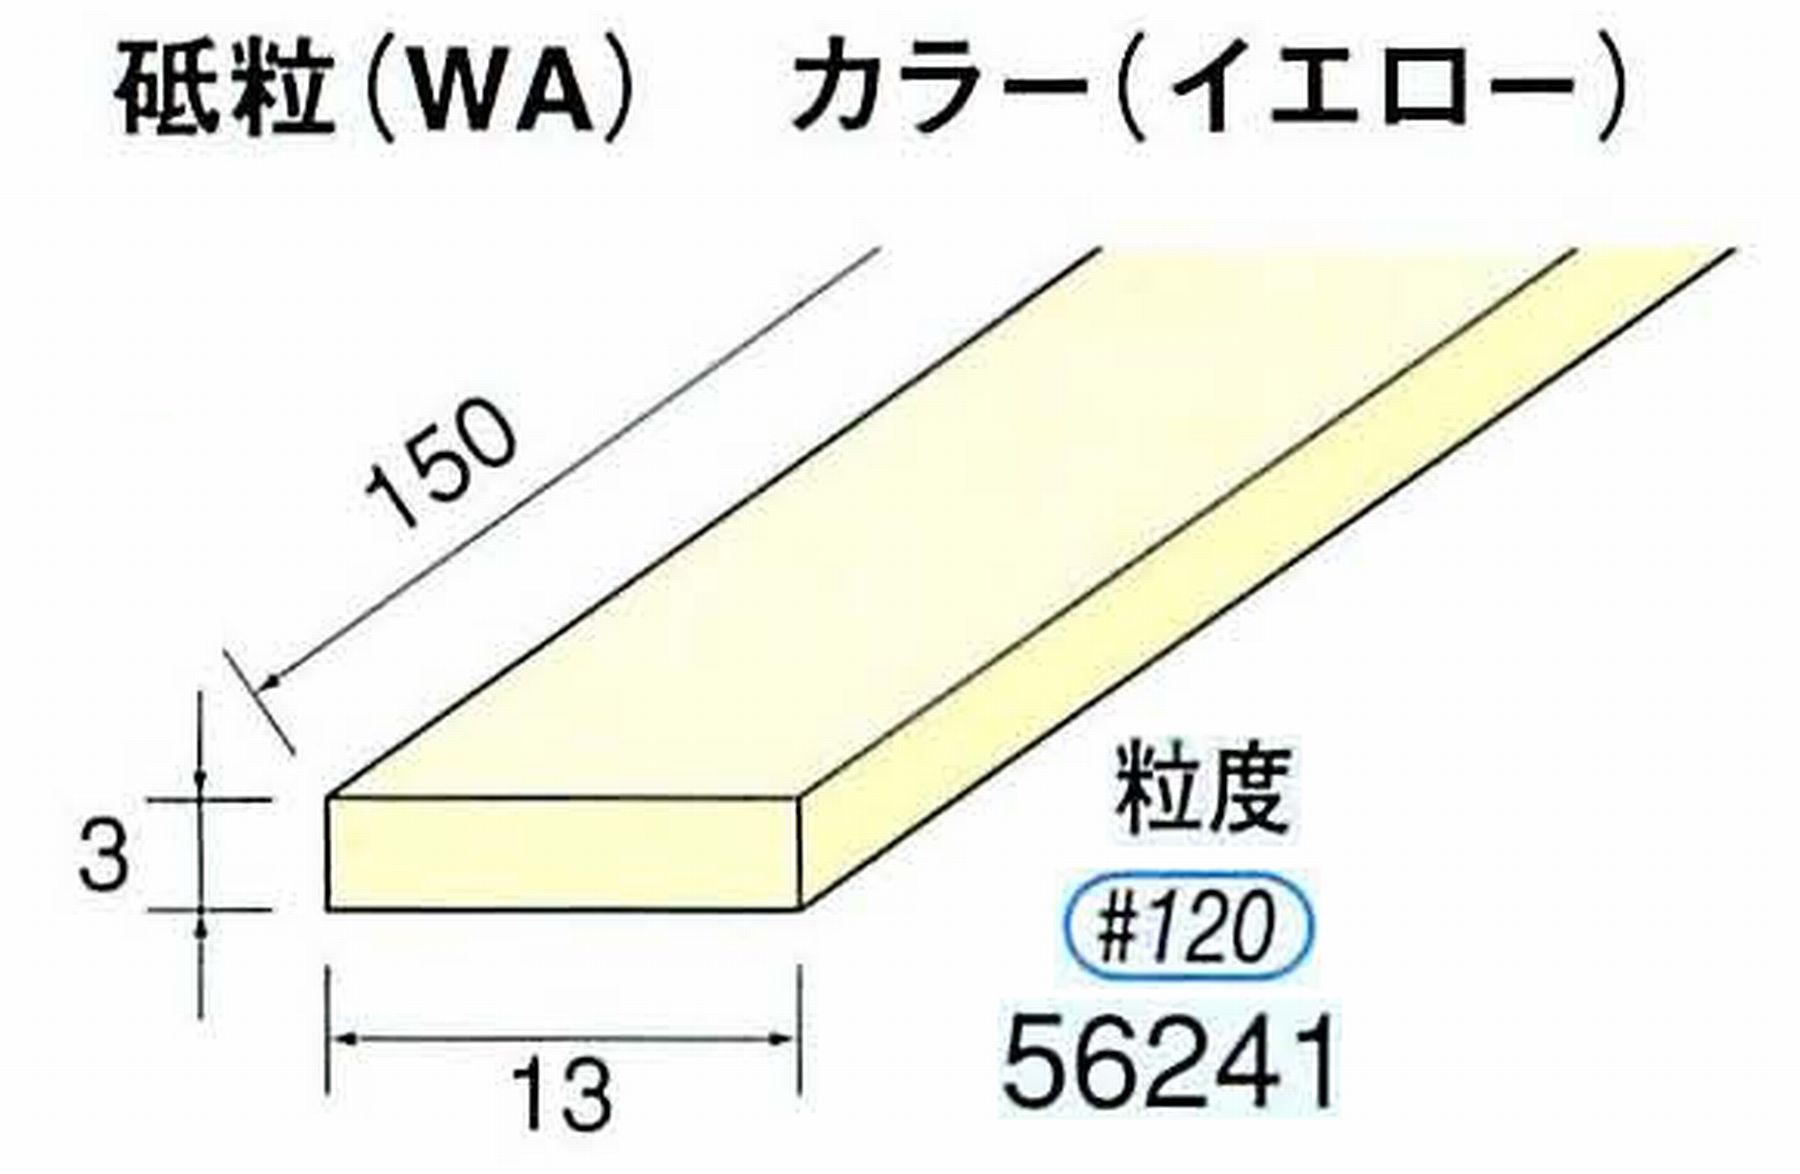 ナカニシ/NAKANISHI スティック砥石 イエロー・フィニッシュシリーズ 砥粒(WA) 56241